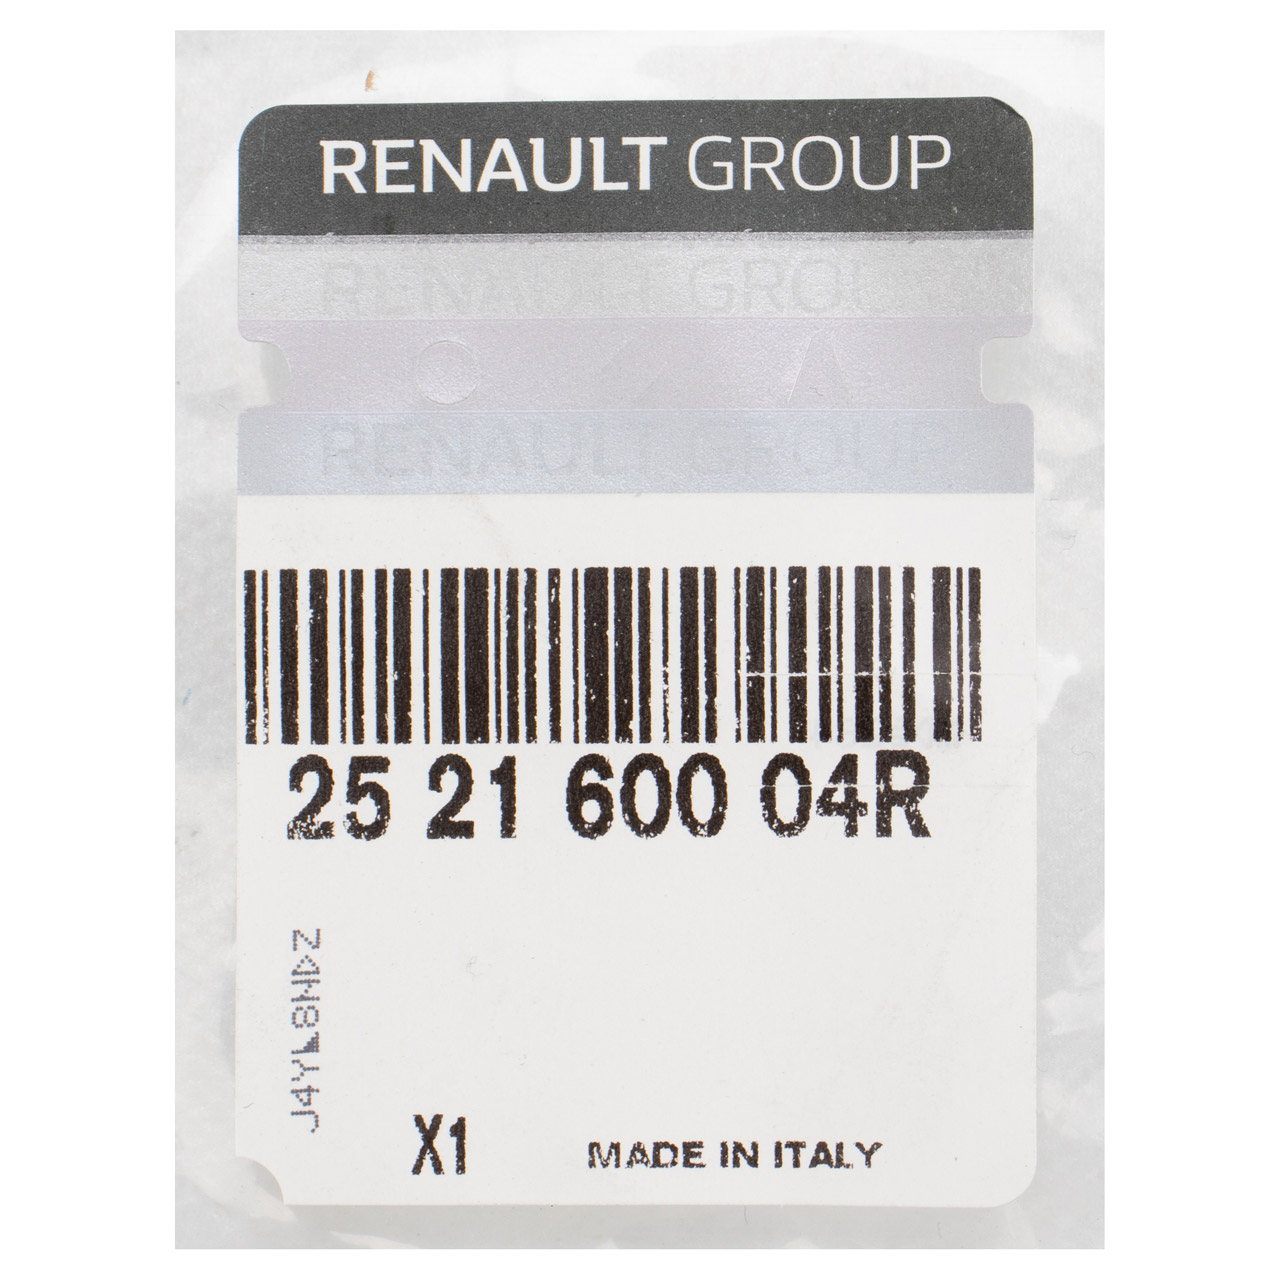 ORIGINAL Renault Türkontaktschalter Schiebetür Master 3 mit Zentralverriegelung 252160004R